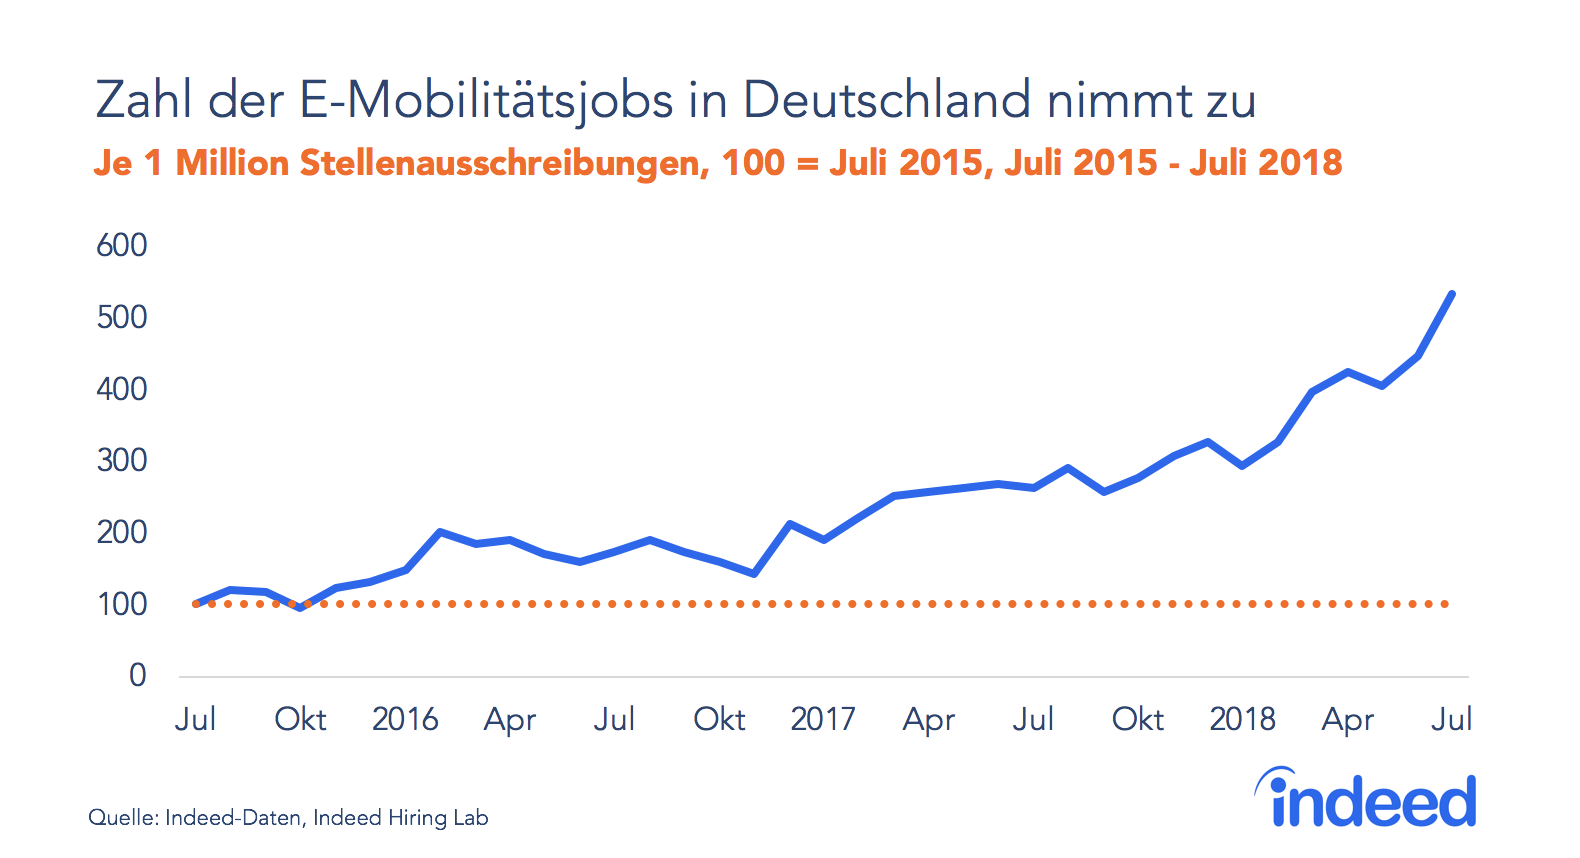 Zahl der E-Mobilitätsjobs in Deutschland nimmt zu